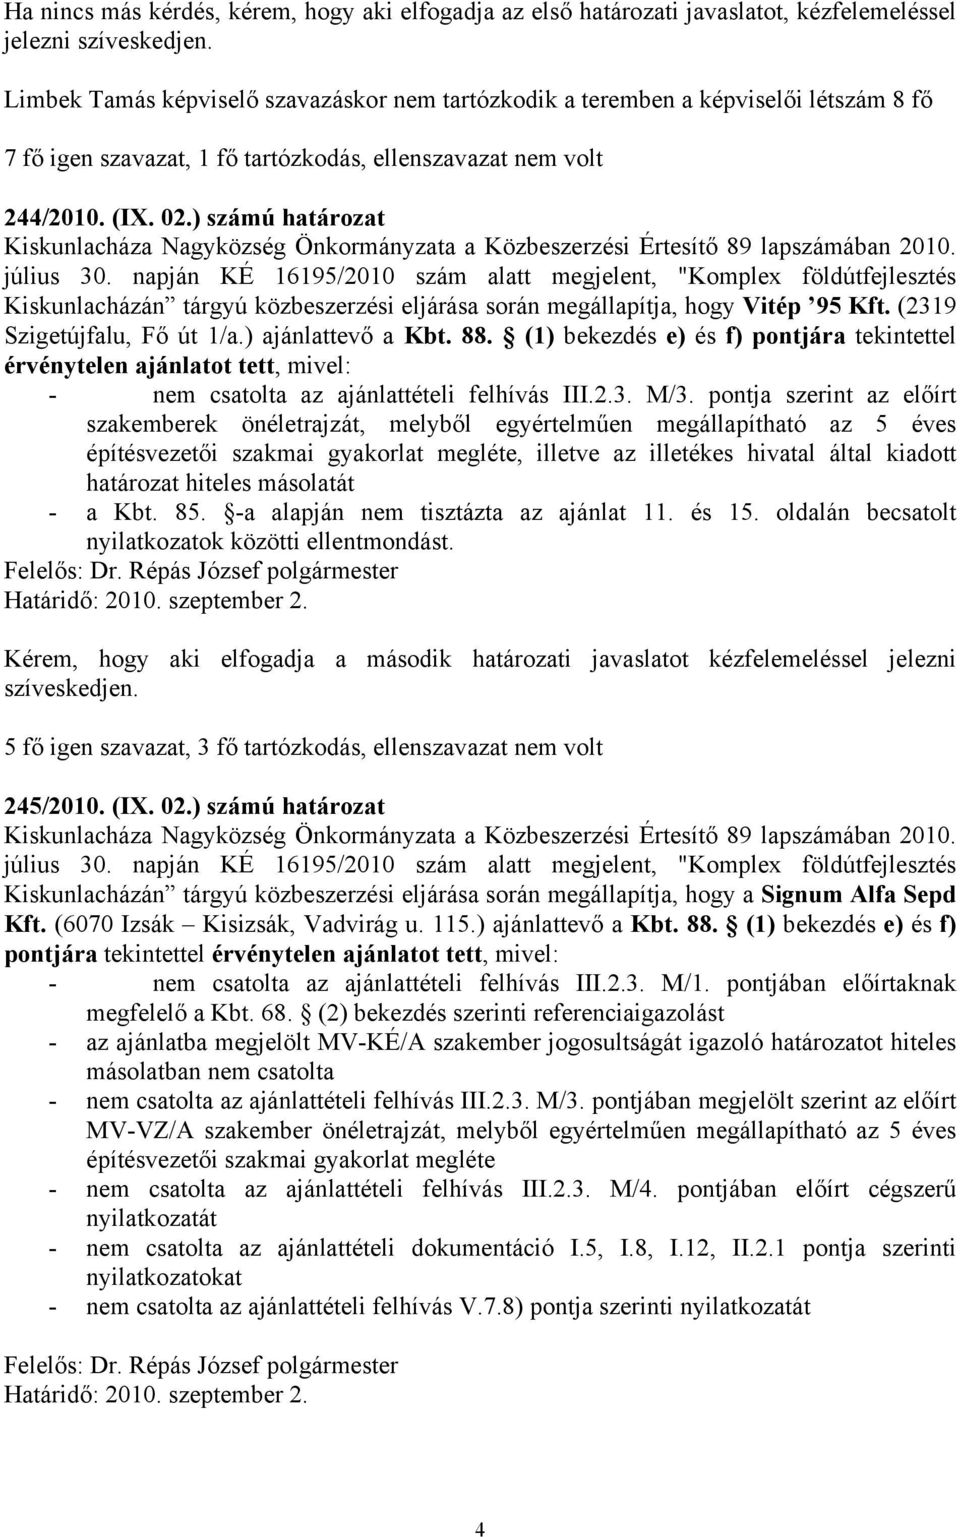 napján KÉ 16195/2010 szám alatt megjelent, "Komplex földútfejlesztés Kiskunlacházán tárgyú közbeszerzési eljárása során megállapítja, hogy Vitép 95 Kft. (2319 Szigetújfalu, Fő út 1/a.